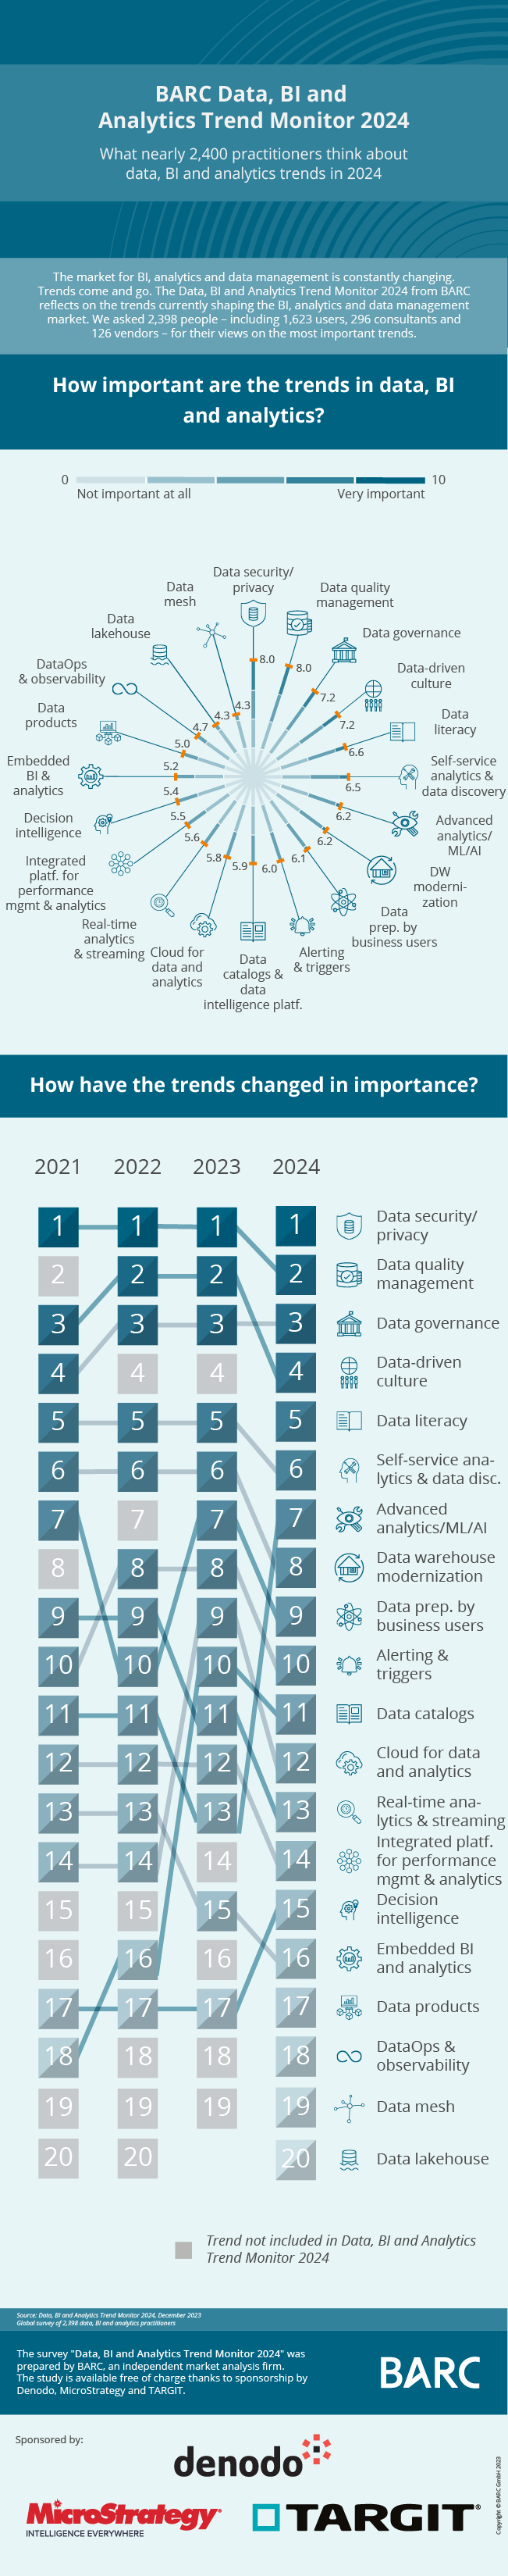 BARC Data, BI & Analytics Trend Monitor 2024